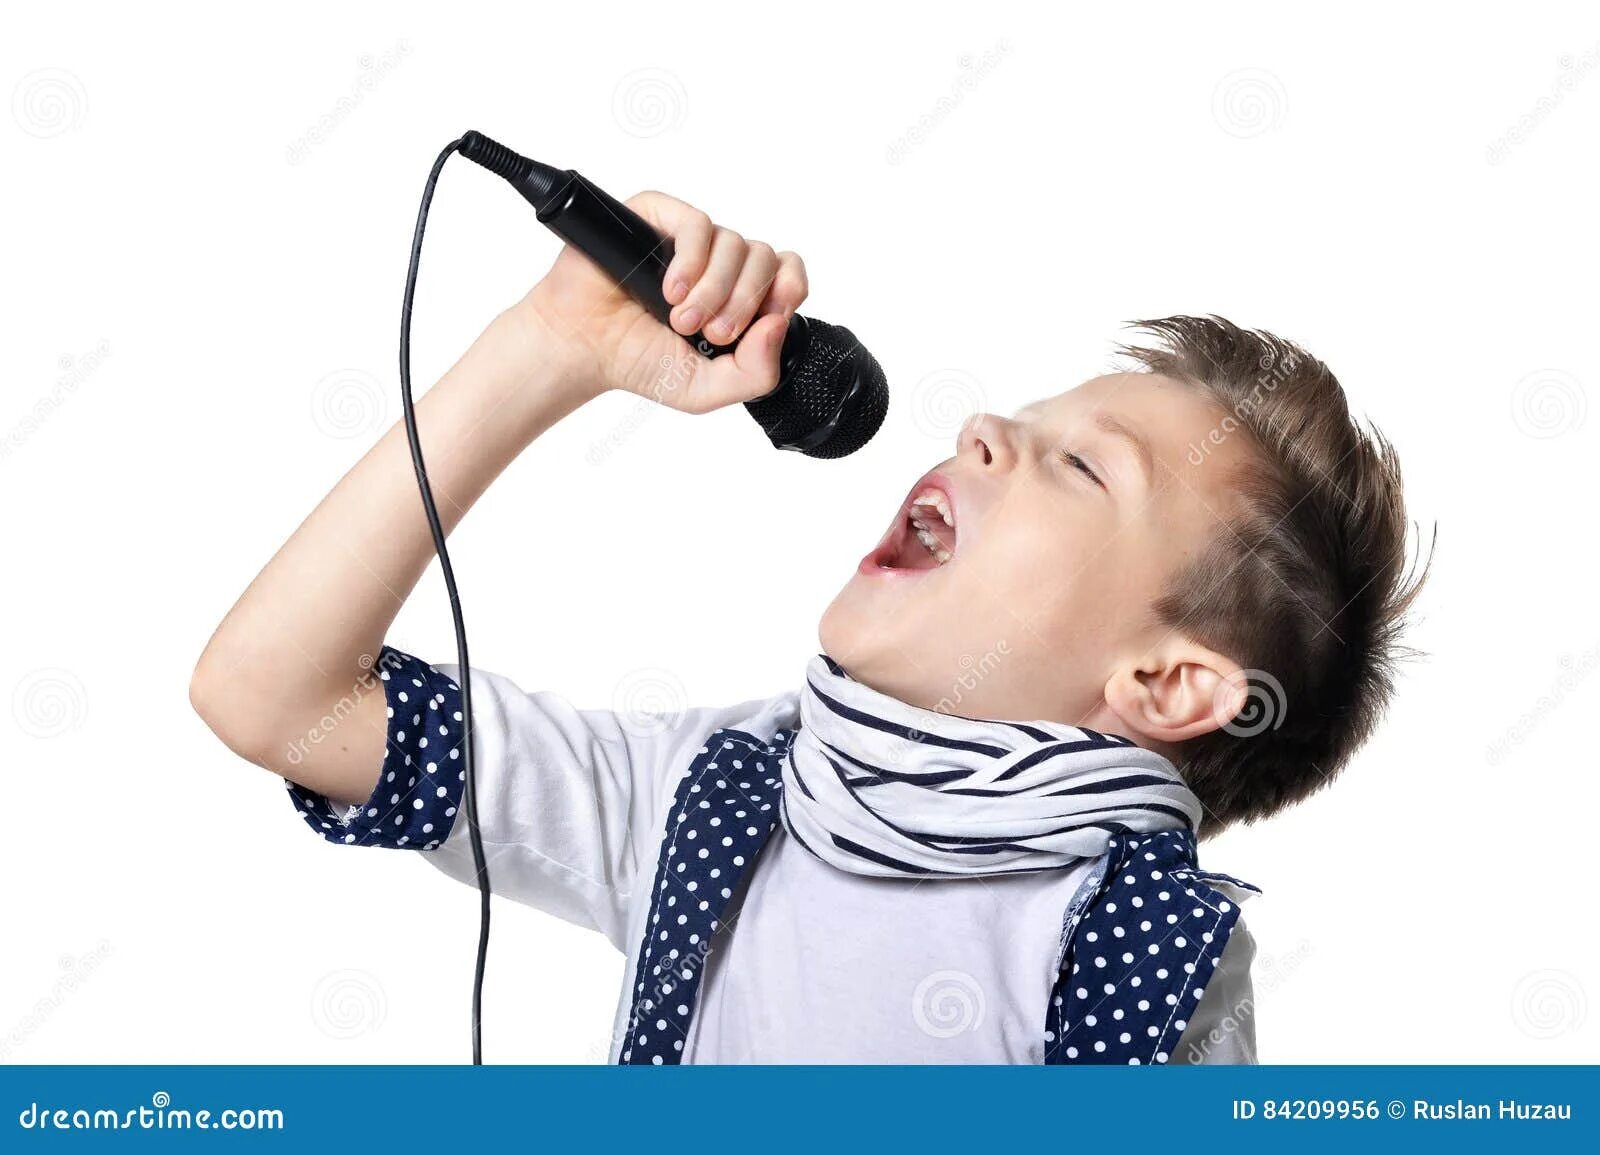 Поют юноши. Мальчик поет. Мальчик поет в микрофон. Юноша поет. Мальчик вокал.